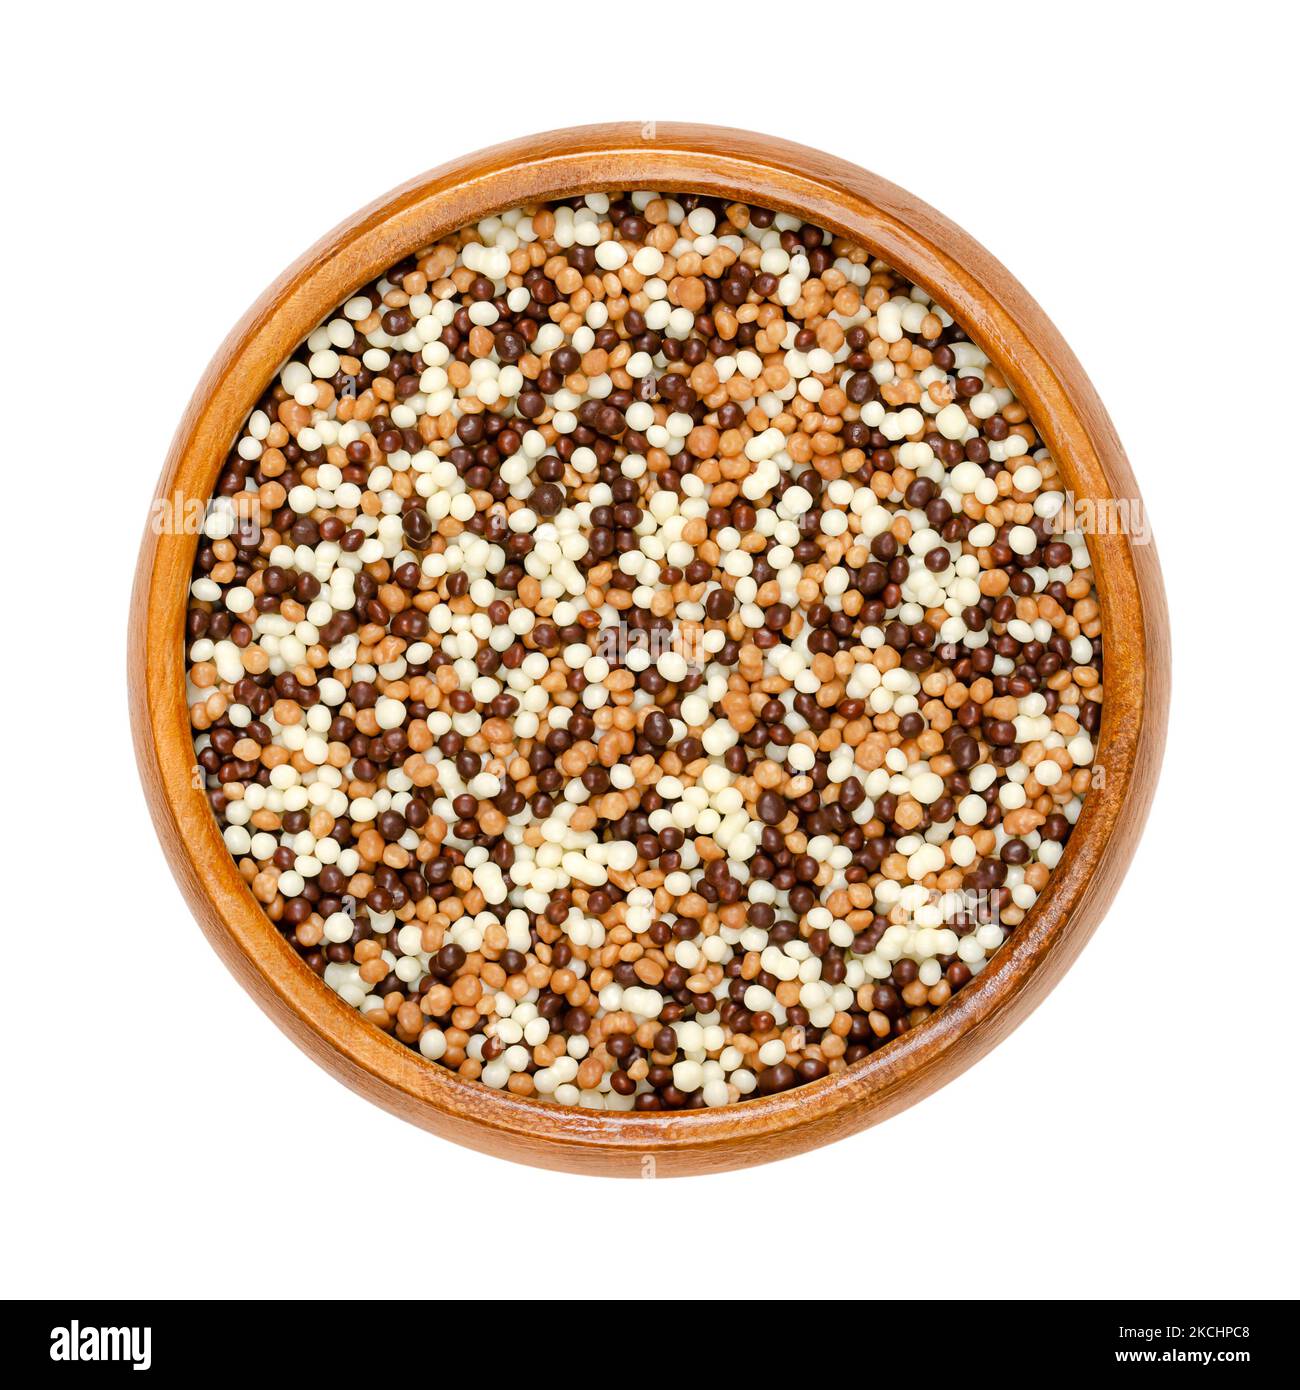 Mini Schokolade knusprige Perlen mischen, in einer Holzschale. Süße, knusprige Cerealien werden mit einer Schicht dunkler, milchiger und weißer Schokolade überzogen. Dekoration. Stockfoto